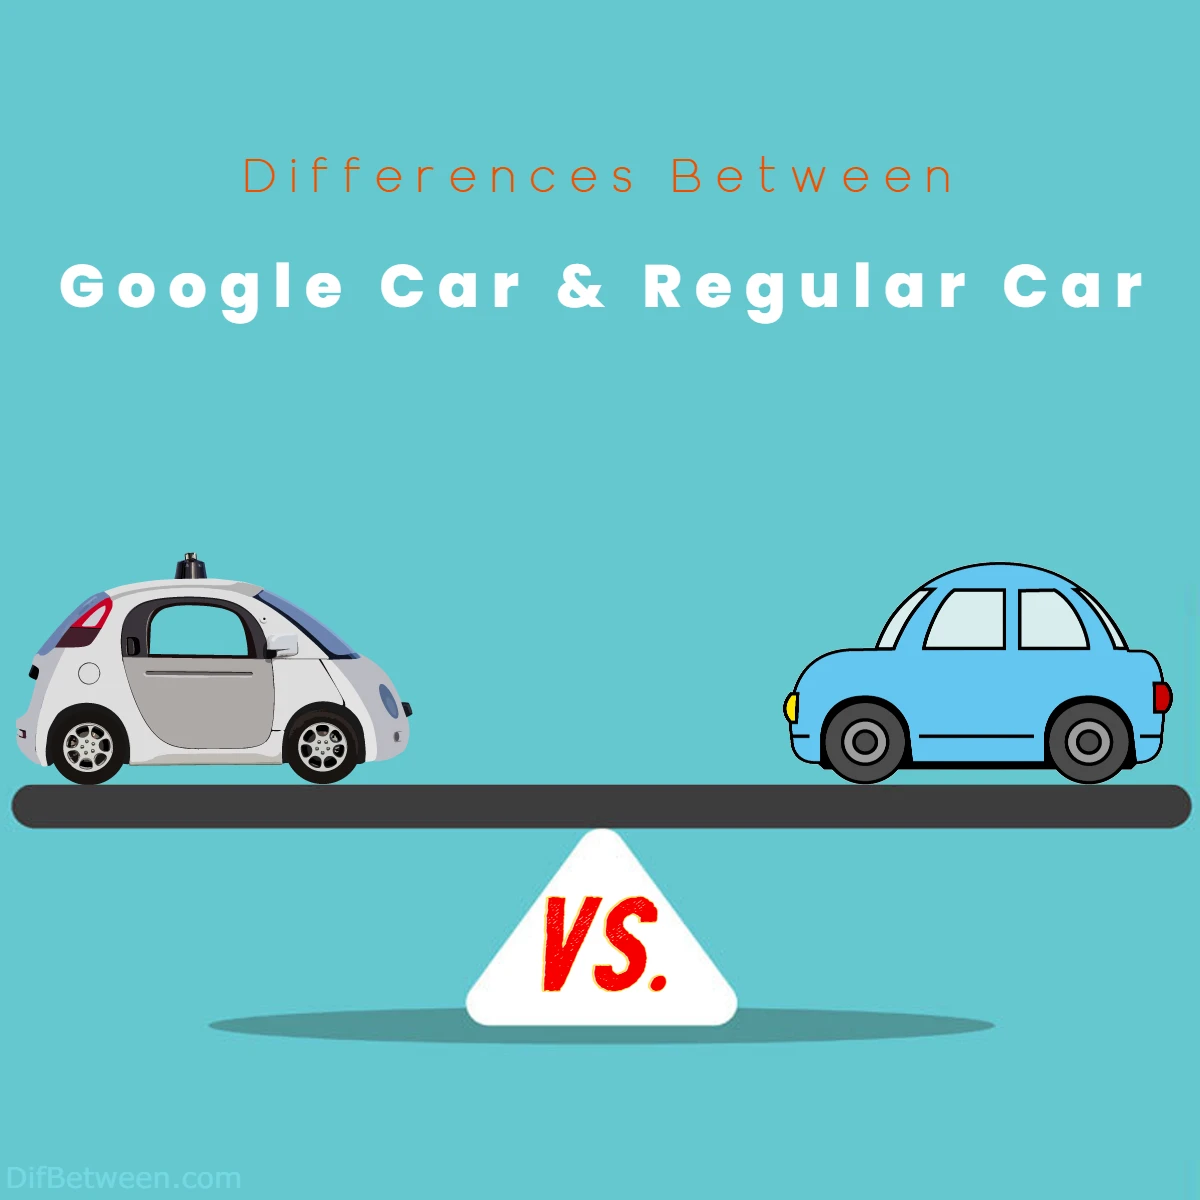 Differences Between Google Car and Regular Car